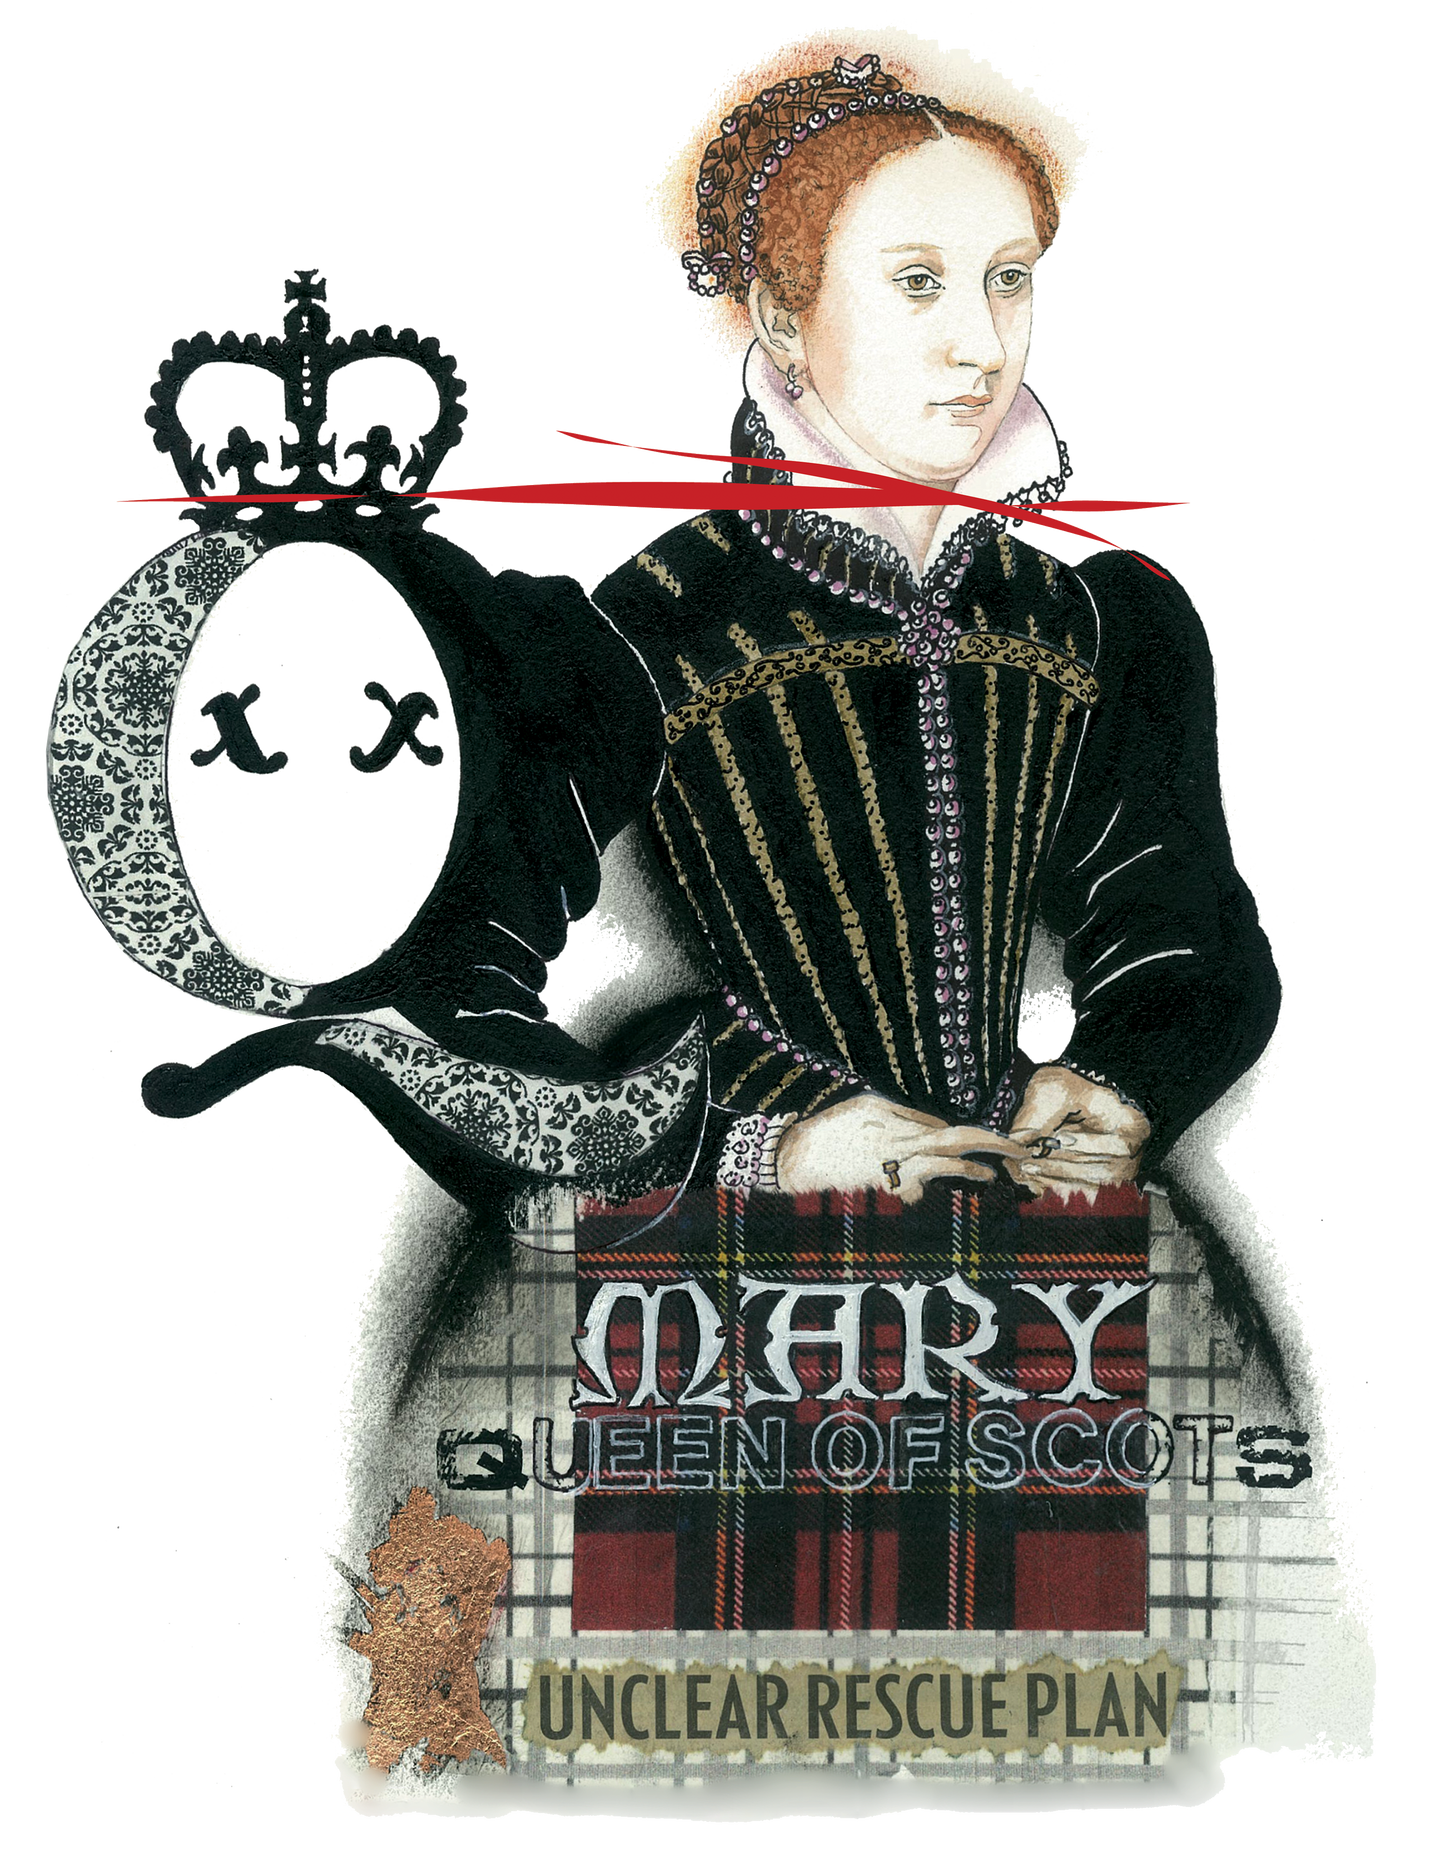 Mary Queen of Scots Sweatshirt